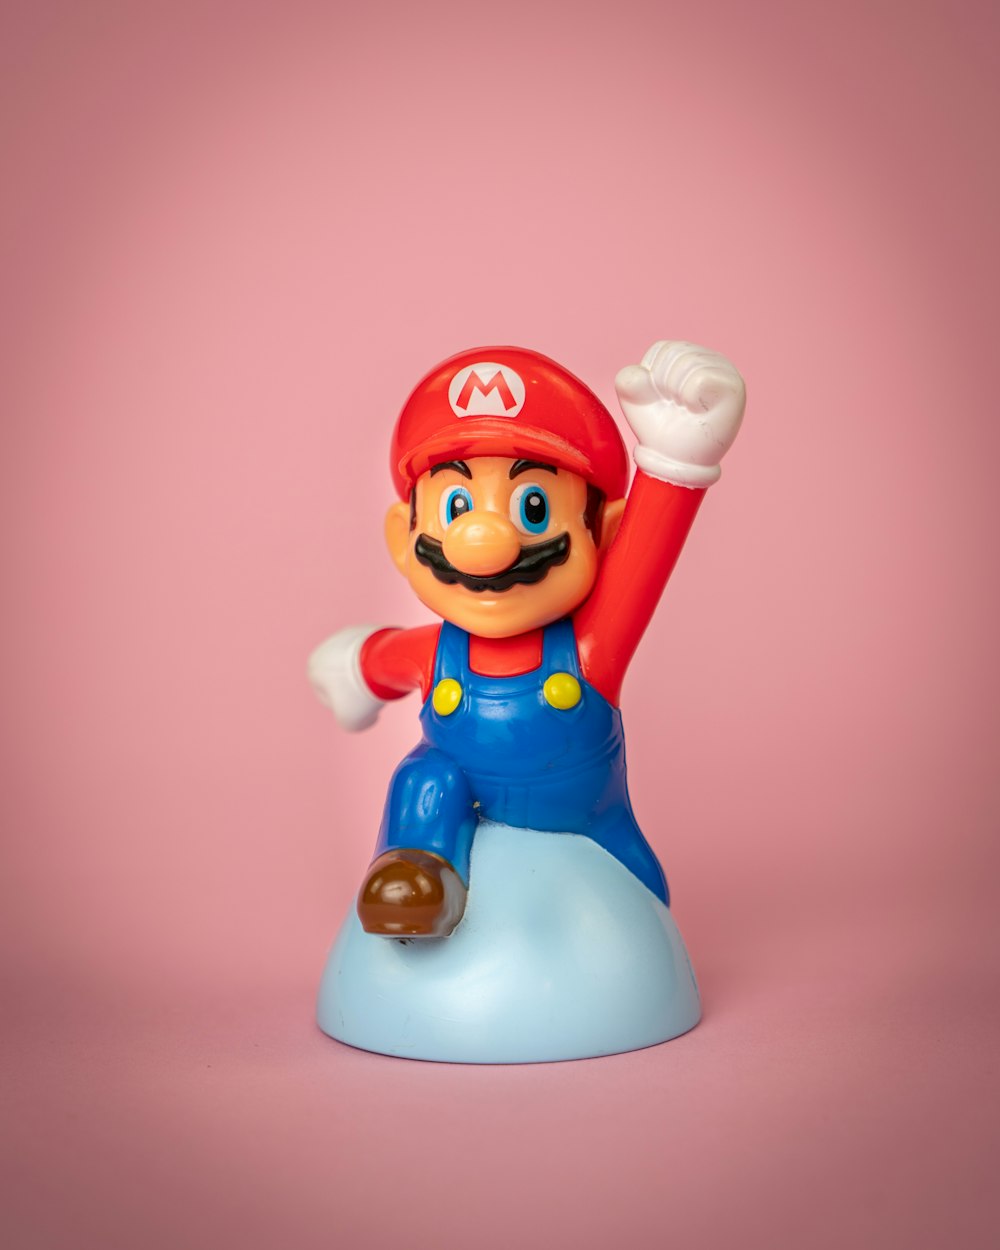 uma figura de brinquedo de mario em cima de um objeto azul